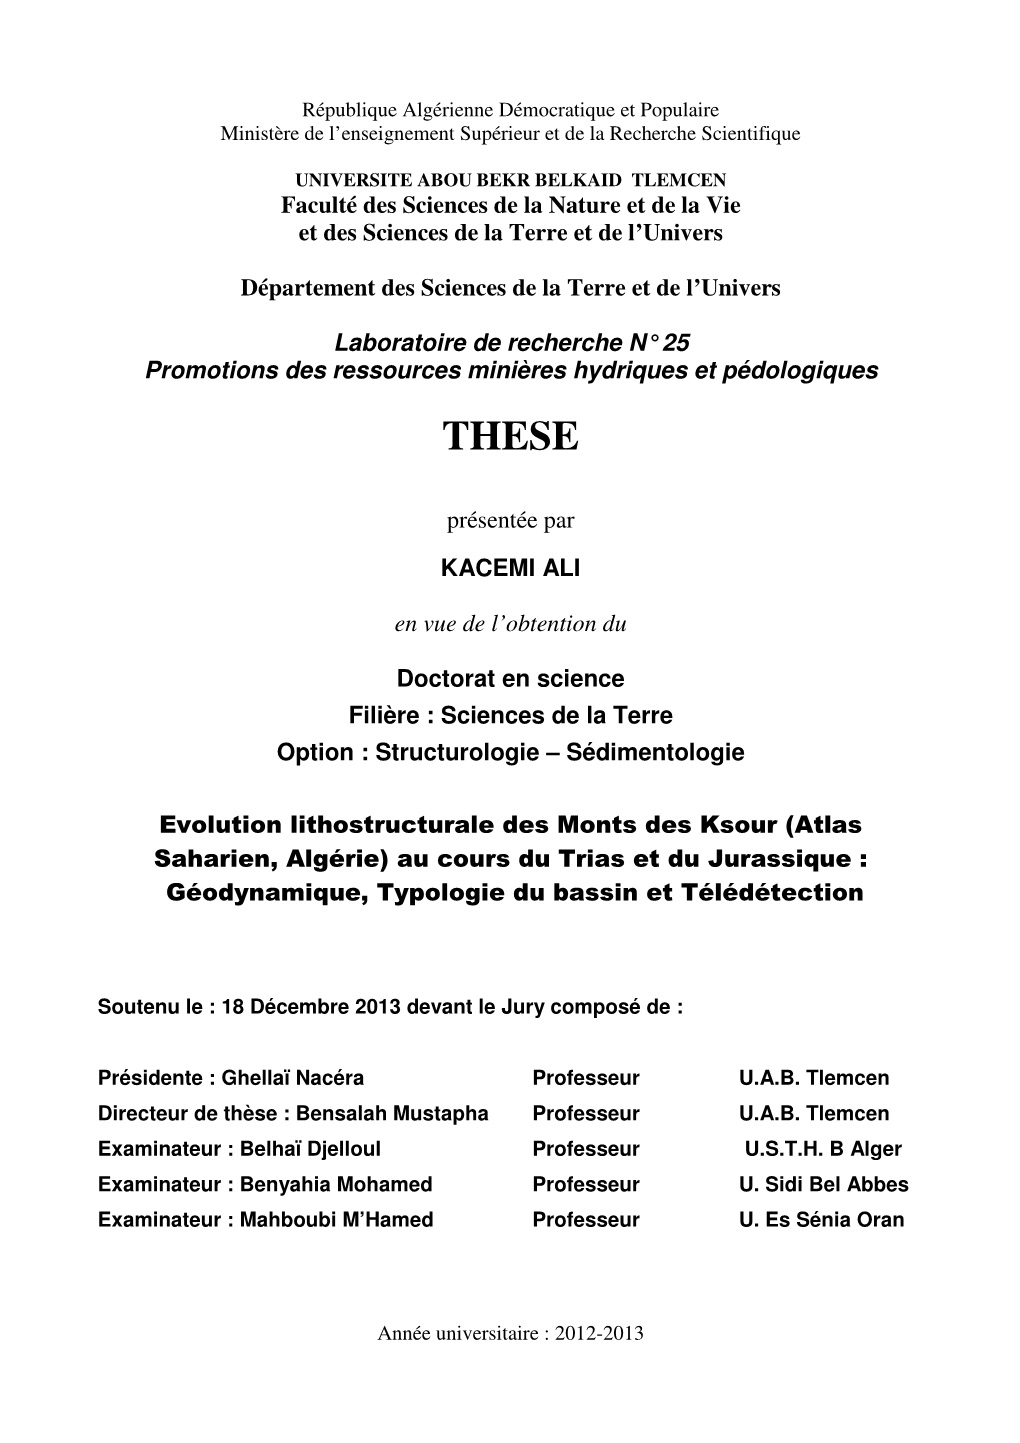 Evolution Lithostructurale Des Monts Des Ksour (Atlas Saharien, Algérie) Au Cours Du Trias Et Du Jurassique : Géodynamique, Typologie Du Bassin Et Télédétection